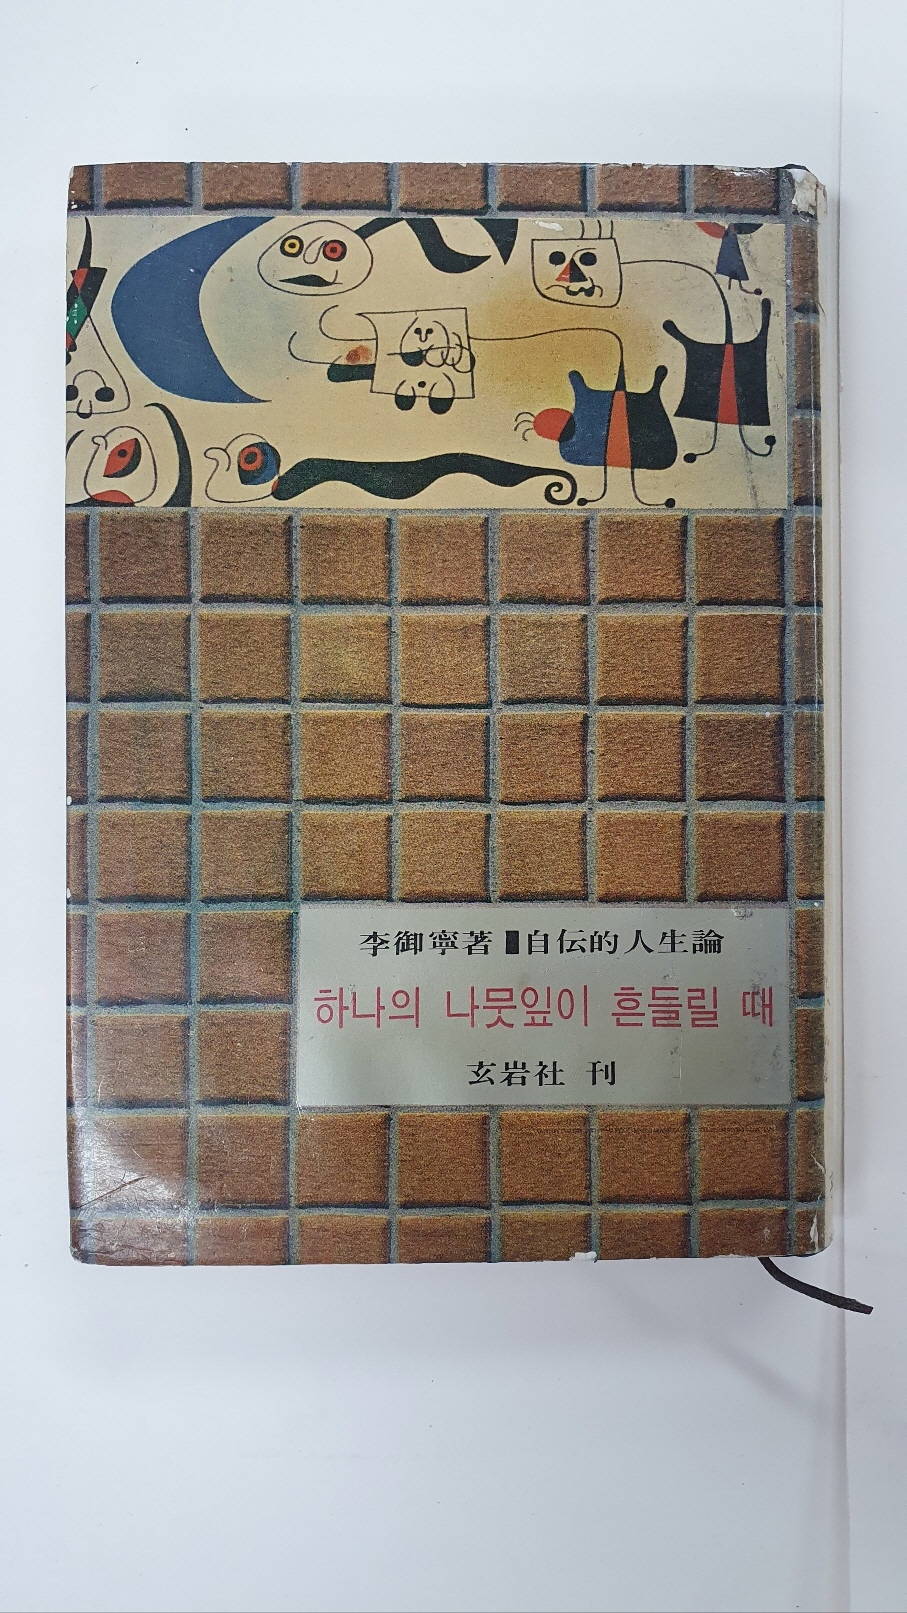 이어령수필집 [하나의 나뭇잎이 흔들릴 때] 1966 초판